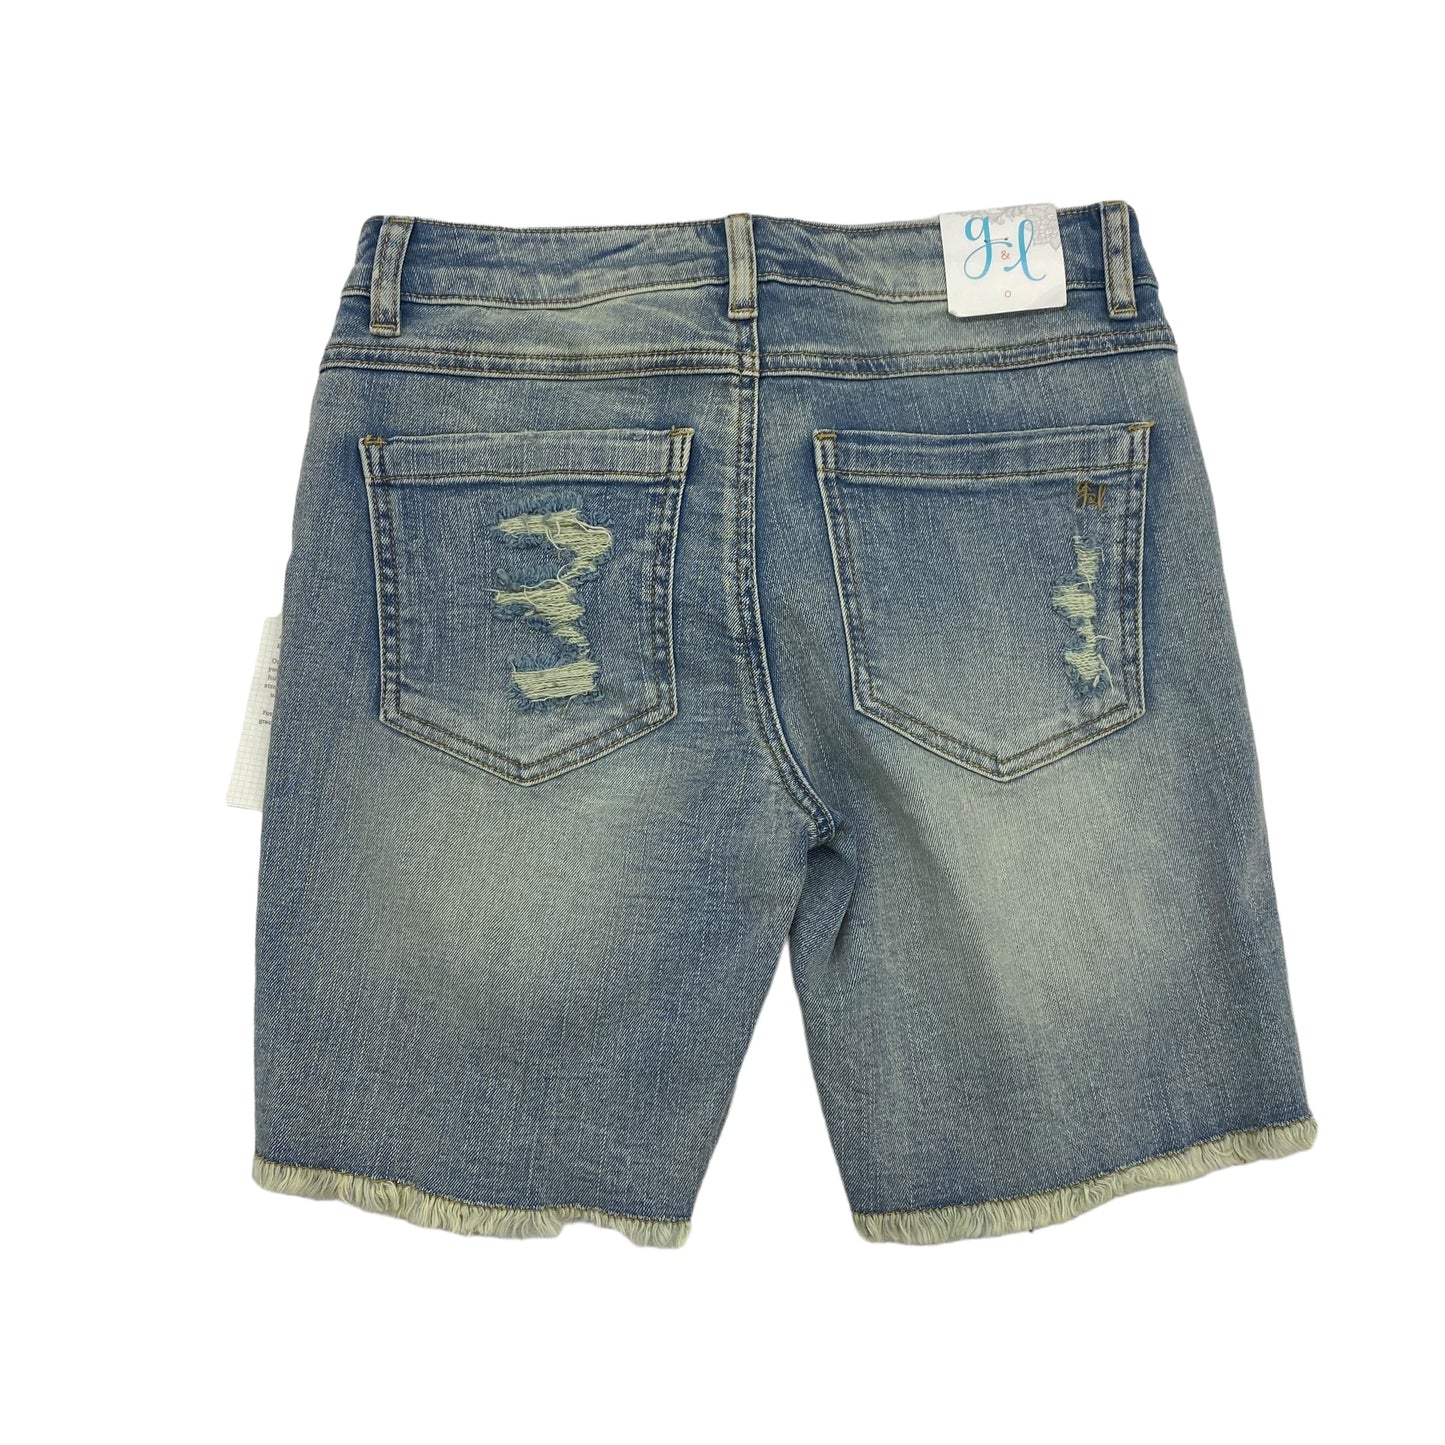 Blue Denim Shorts Clothes Mentor, Size 0